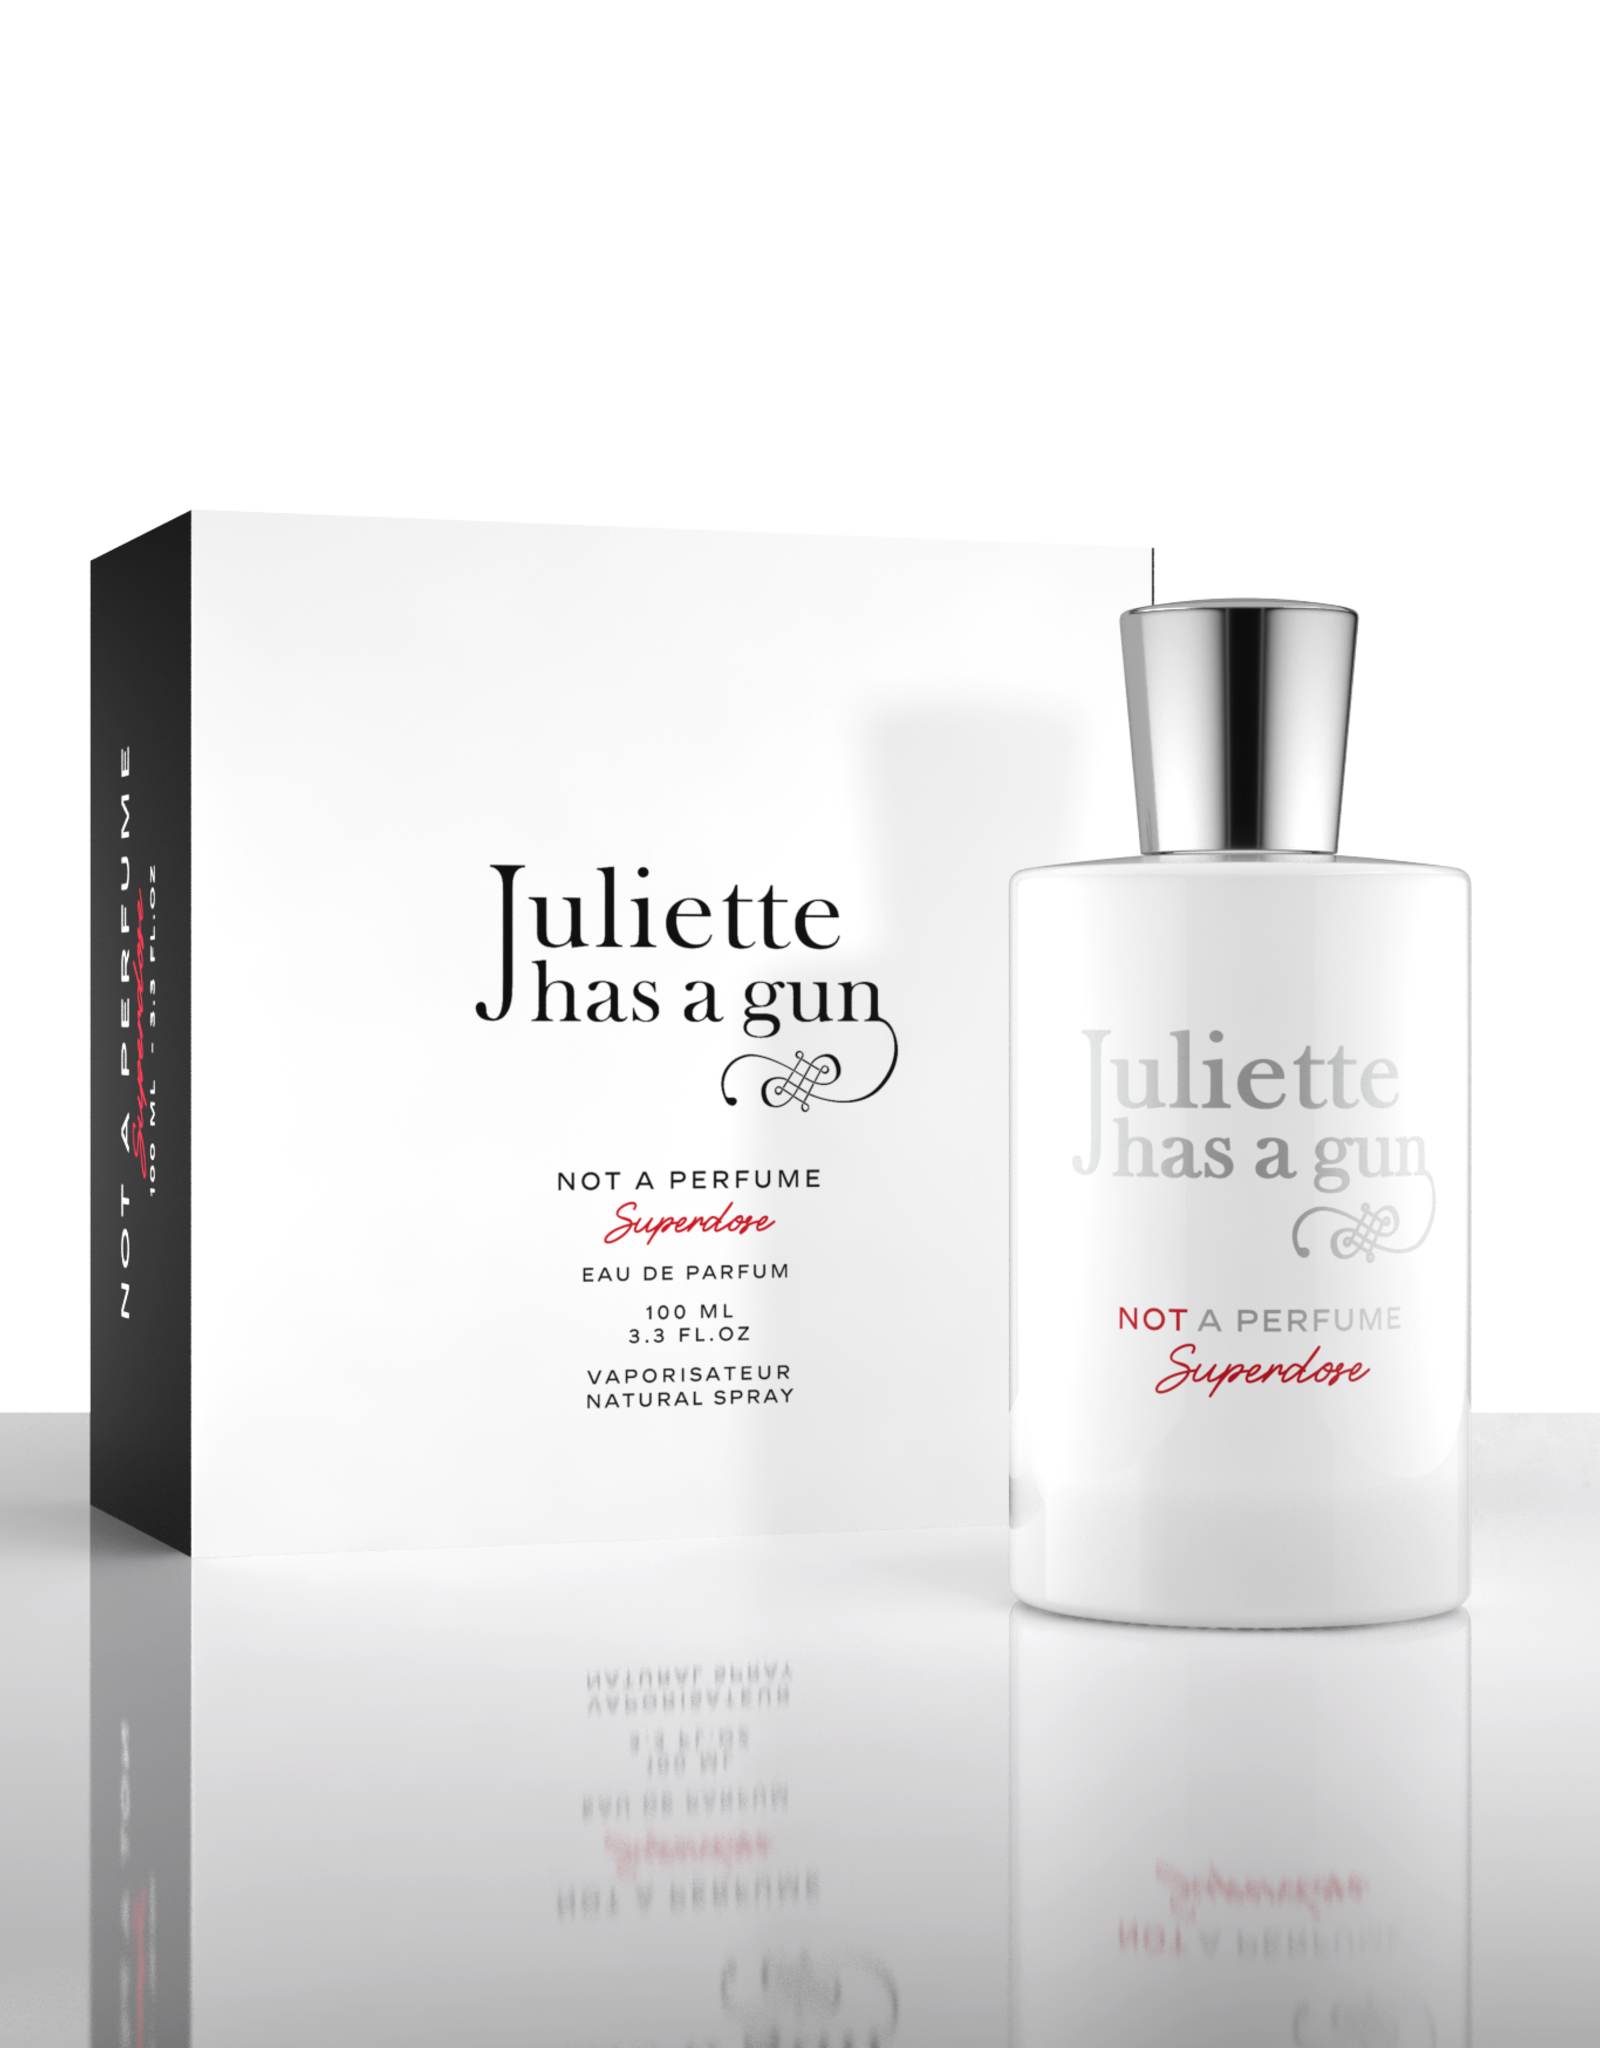 Juliette has a gun Juliette has a gun - Not a Perfume Superdose 100ml